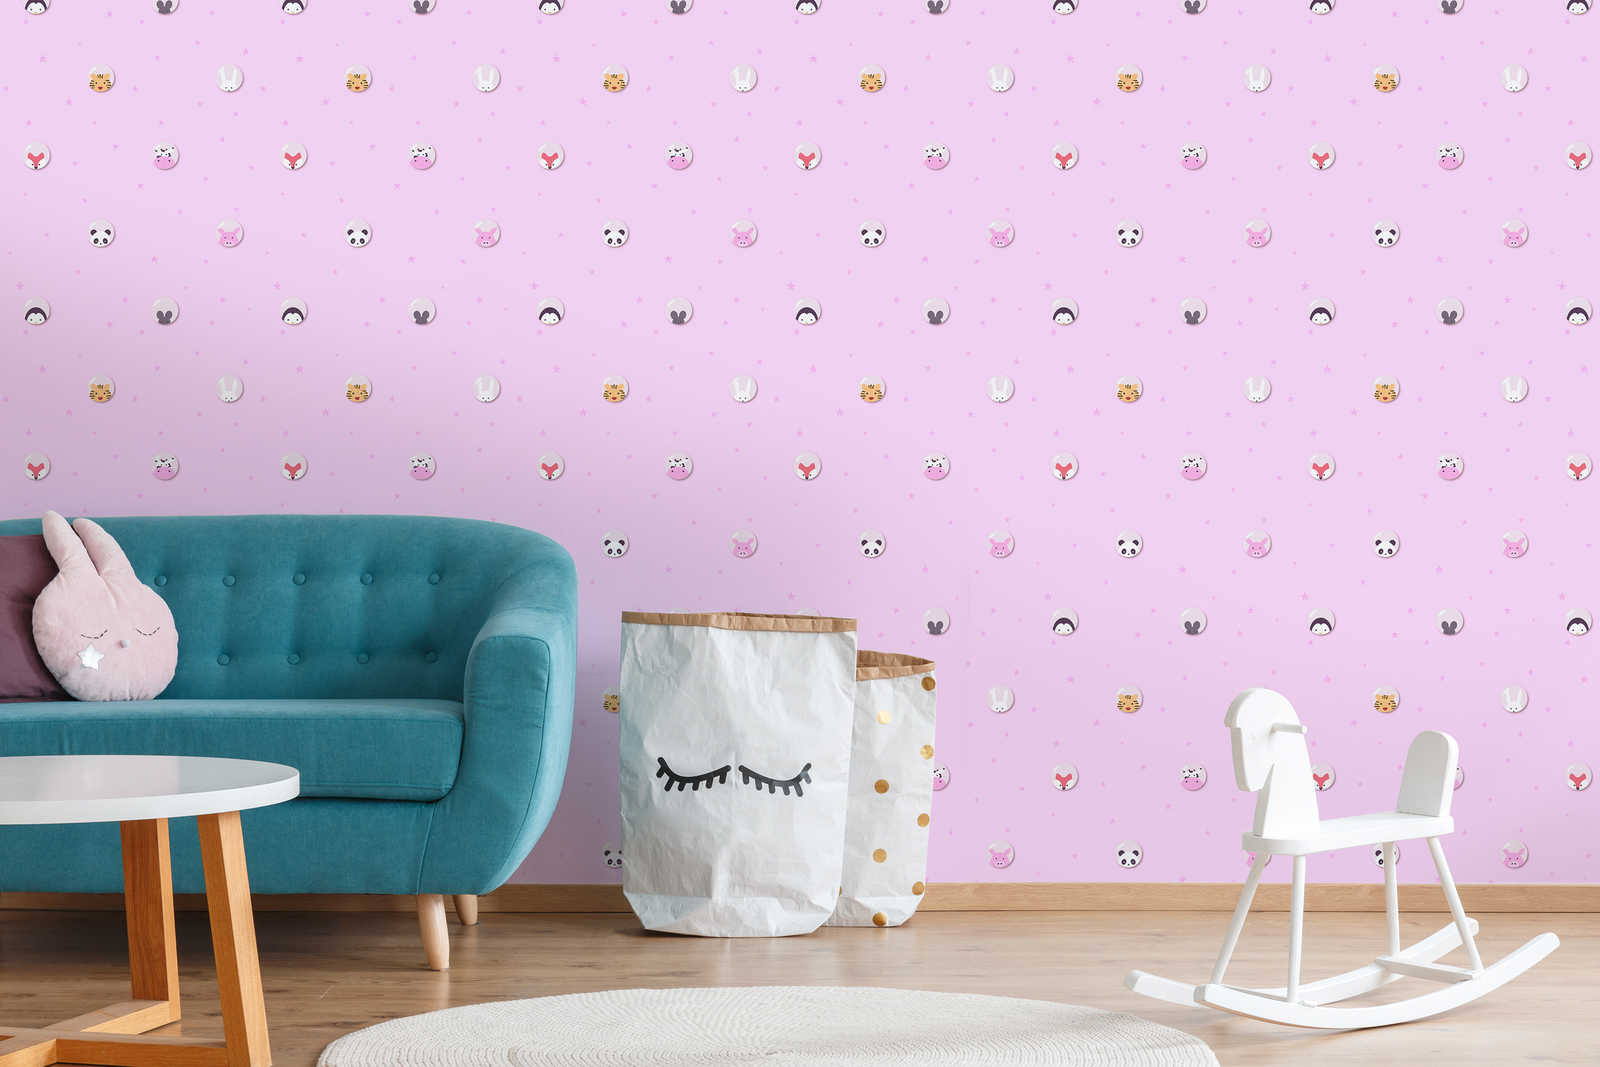             Chambre enfants filles Papier peint animaux & étoiles - rose, blanc, jaune
        